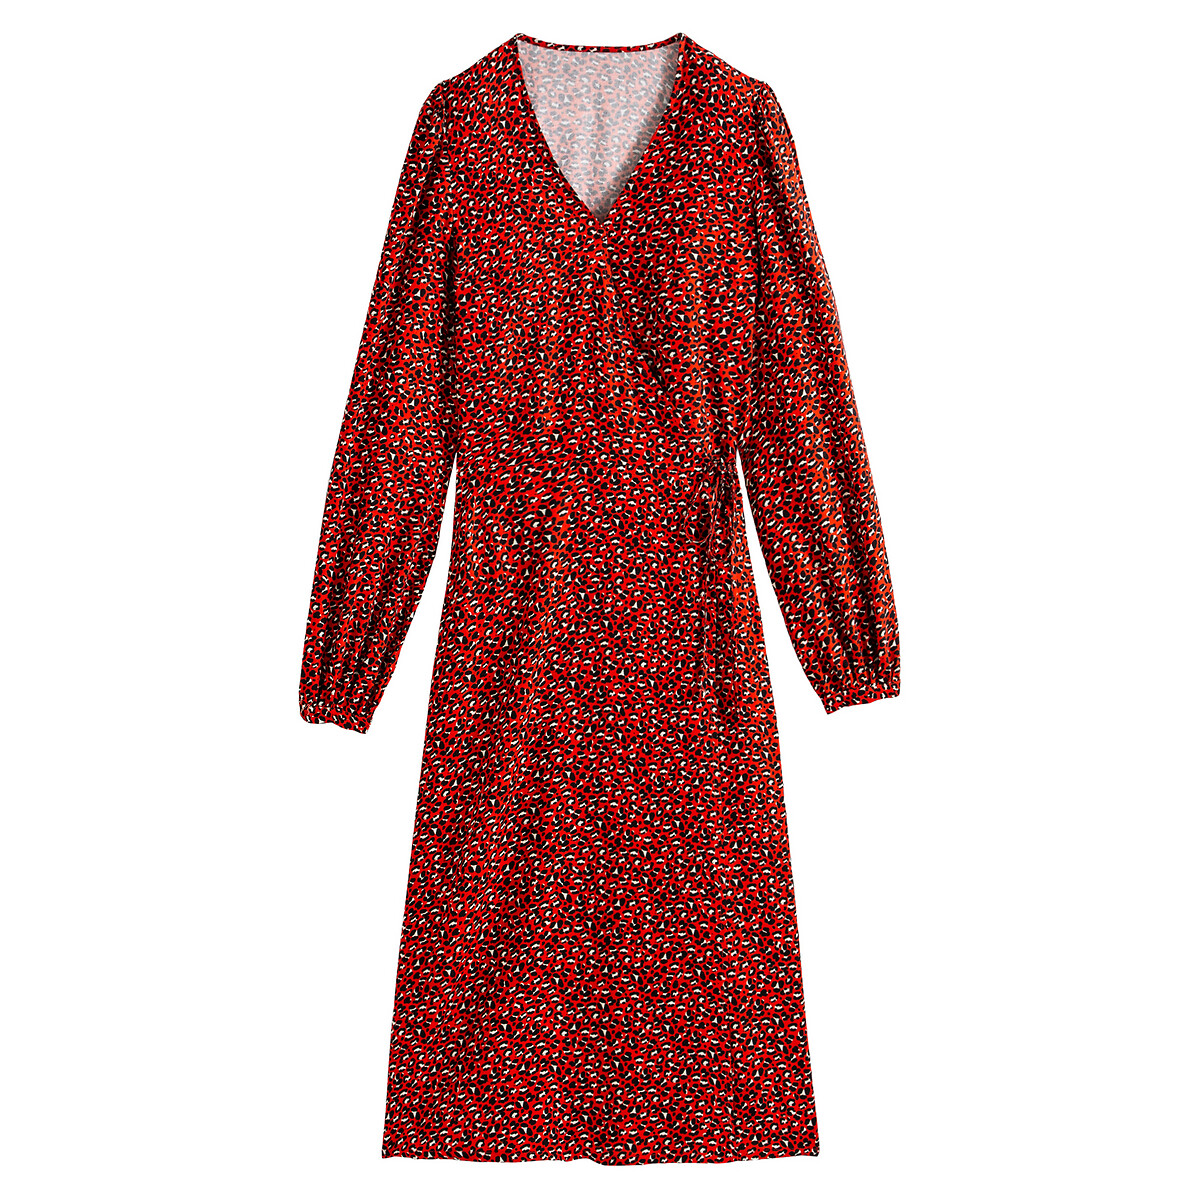 Платье LaRedoute Длинное с запахом с анималистичным принтом 42 (FR) - 48 (RUS) красный, размер 42 (FR) - 48 (RUS) Длинное с запахом с анималистичным принтом 42 (FR) - 48 (RUS) красный - фото 5